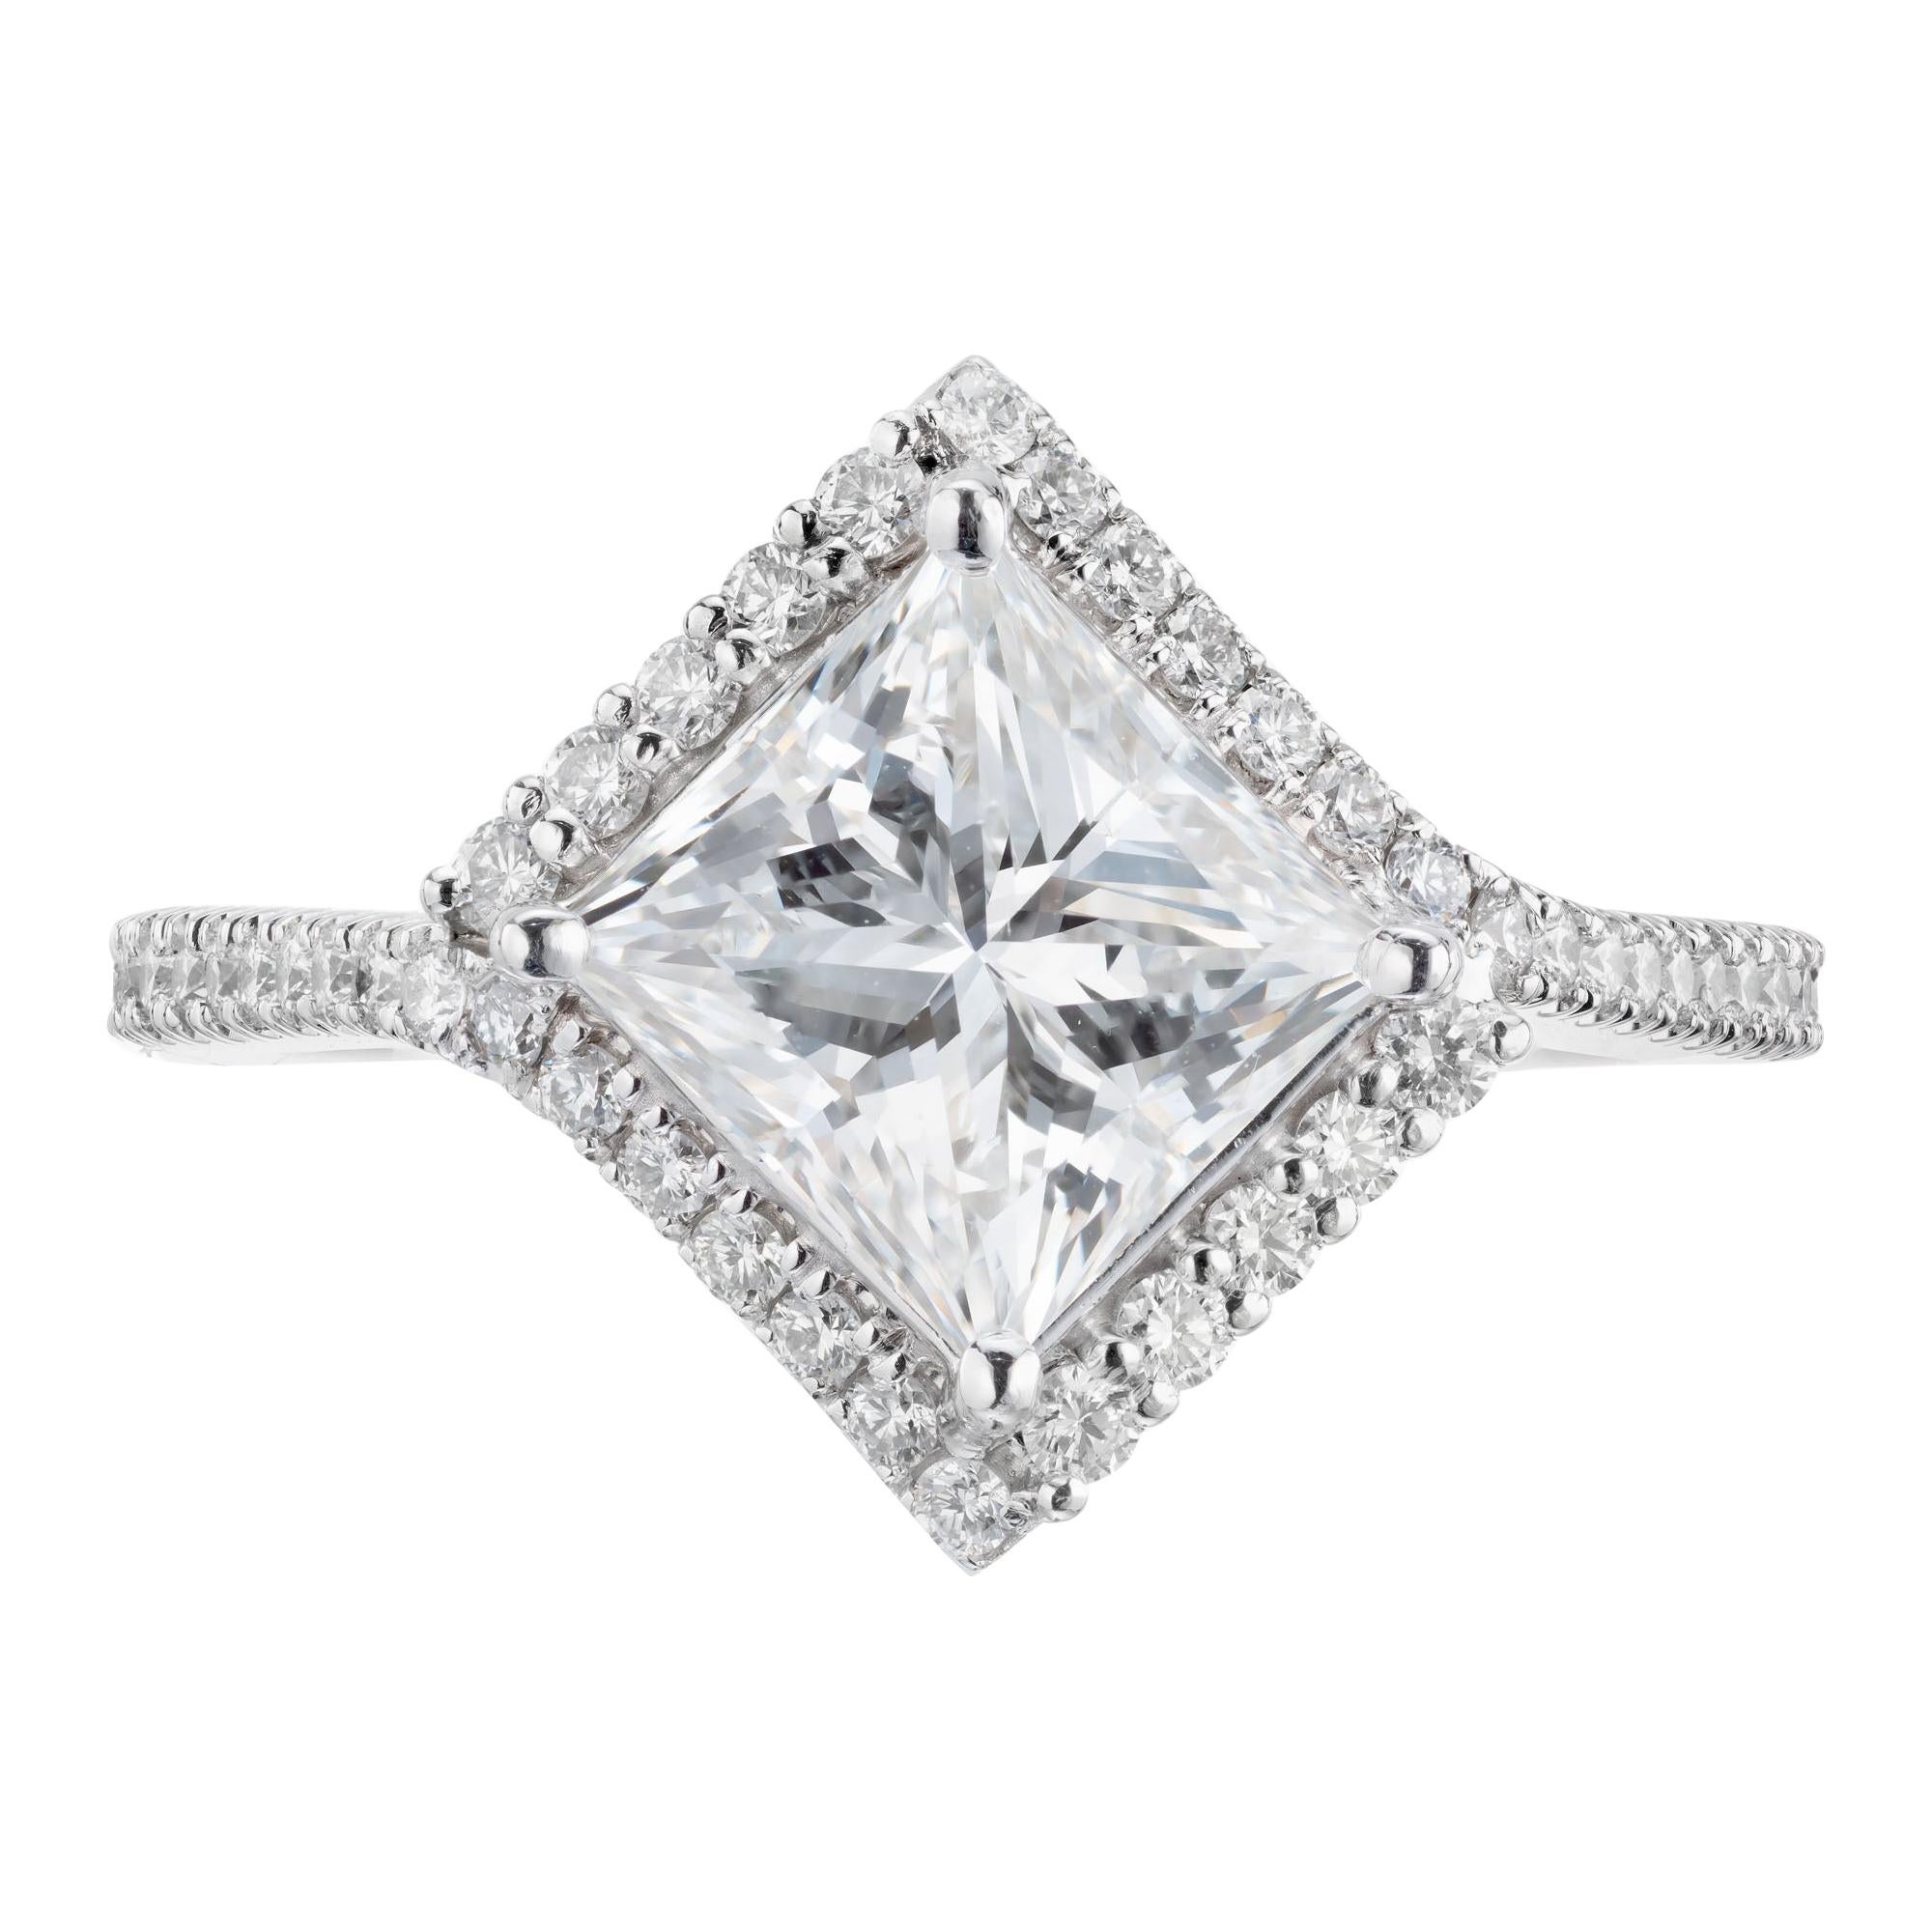 Verlobungsring mit GIA-zertifiziertem 1,95 Karat Diamant in Platin von Peter Suchy